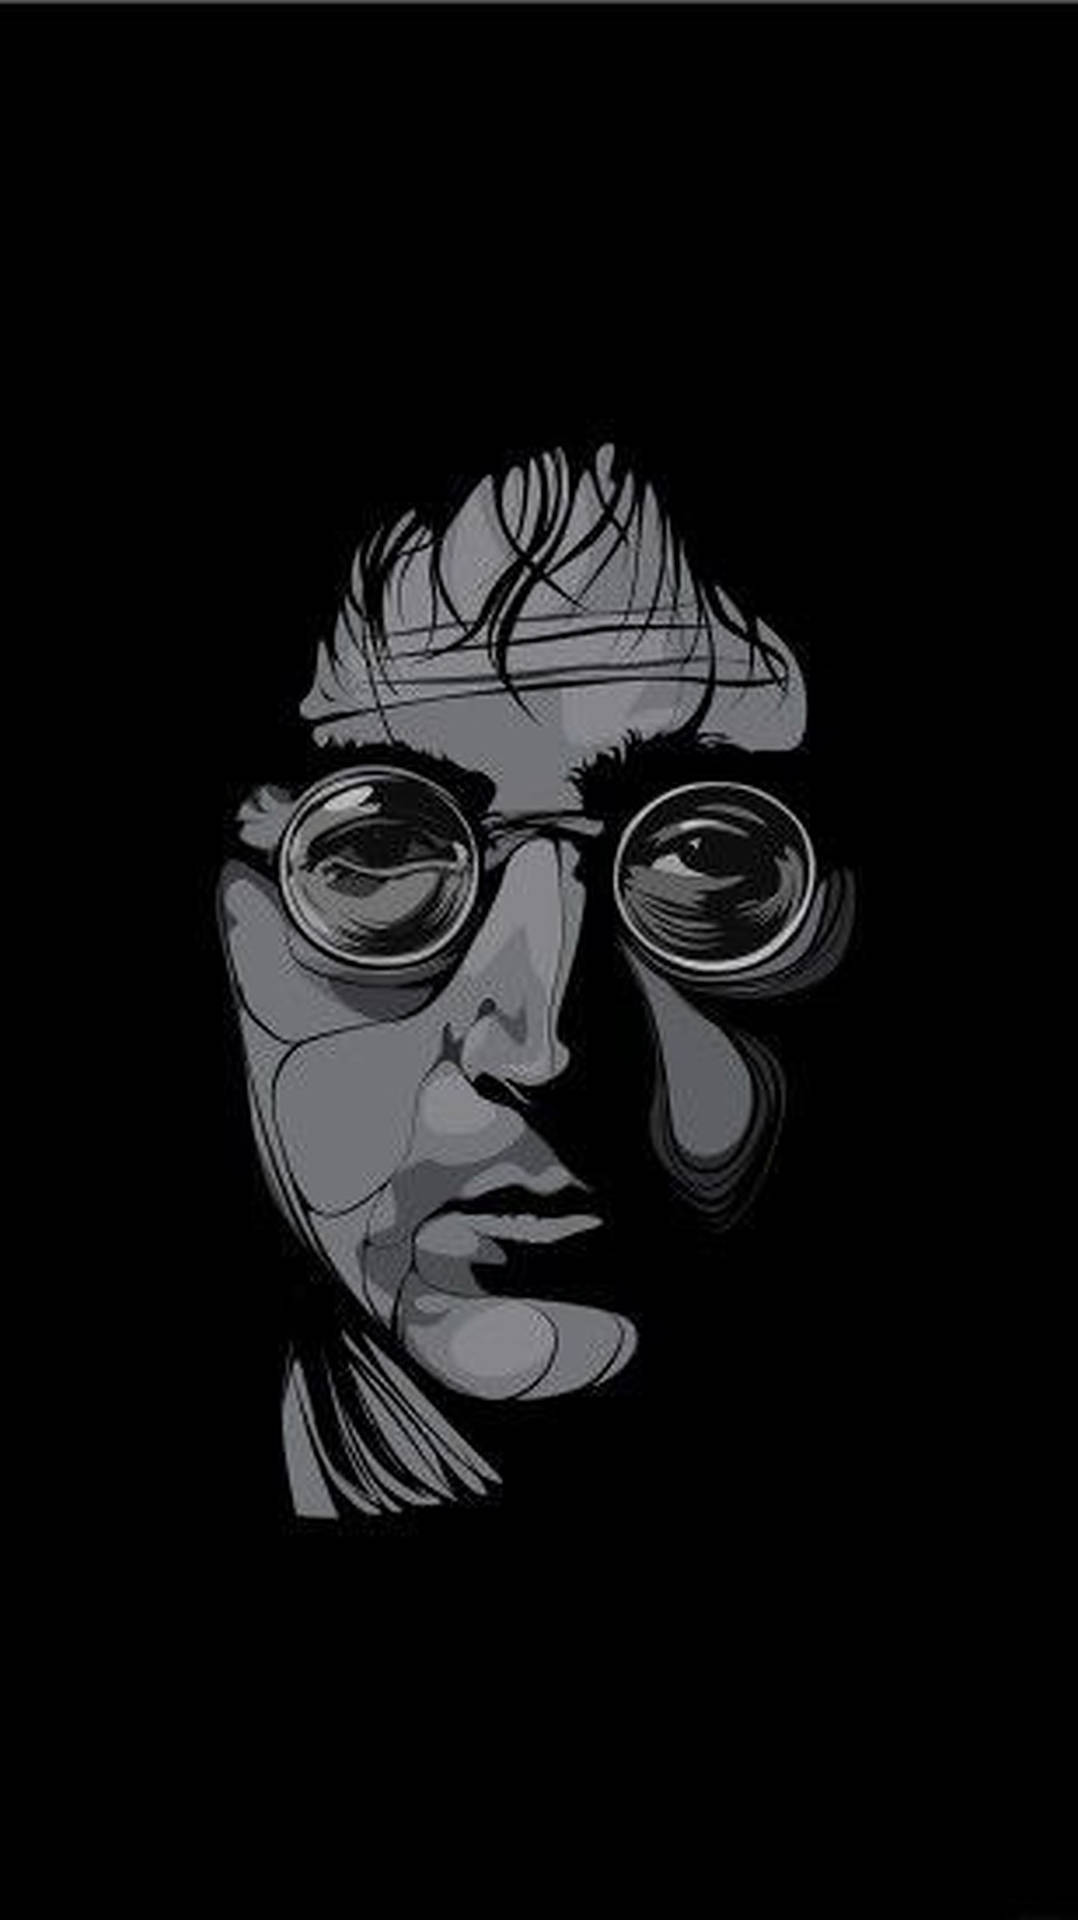 John Lennon Monochrome Art Background